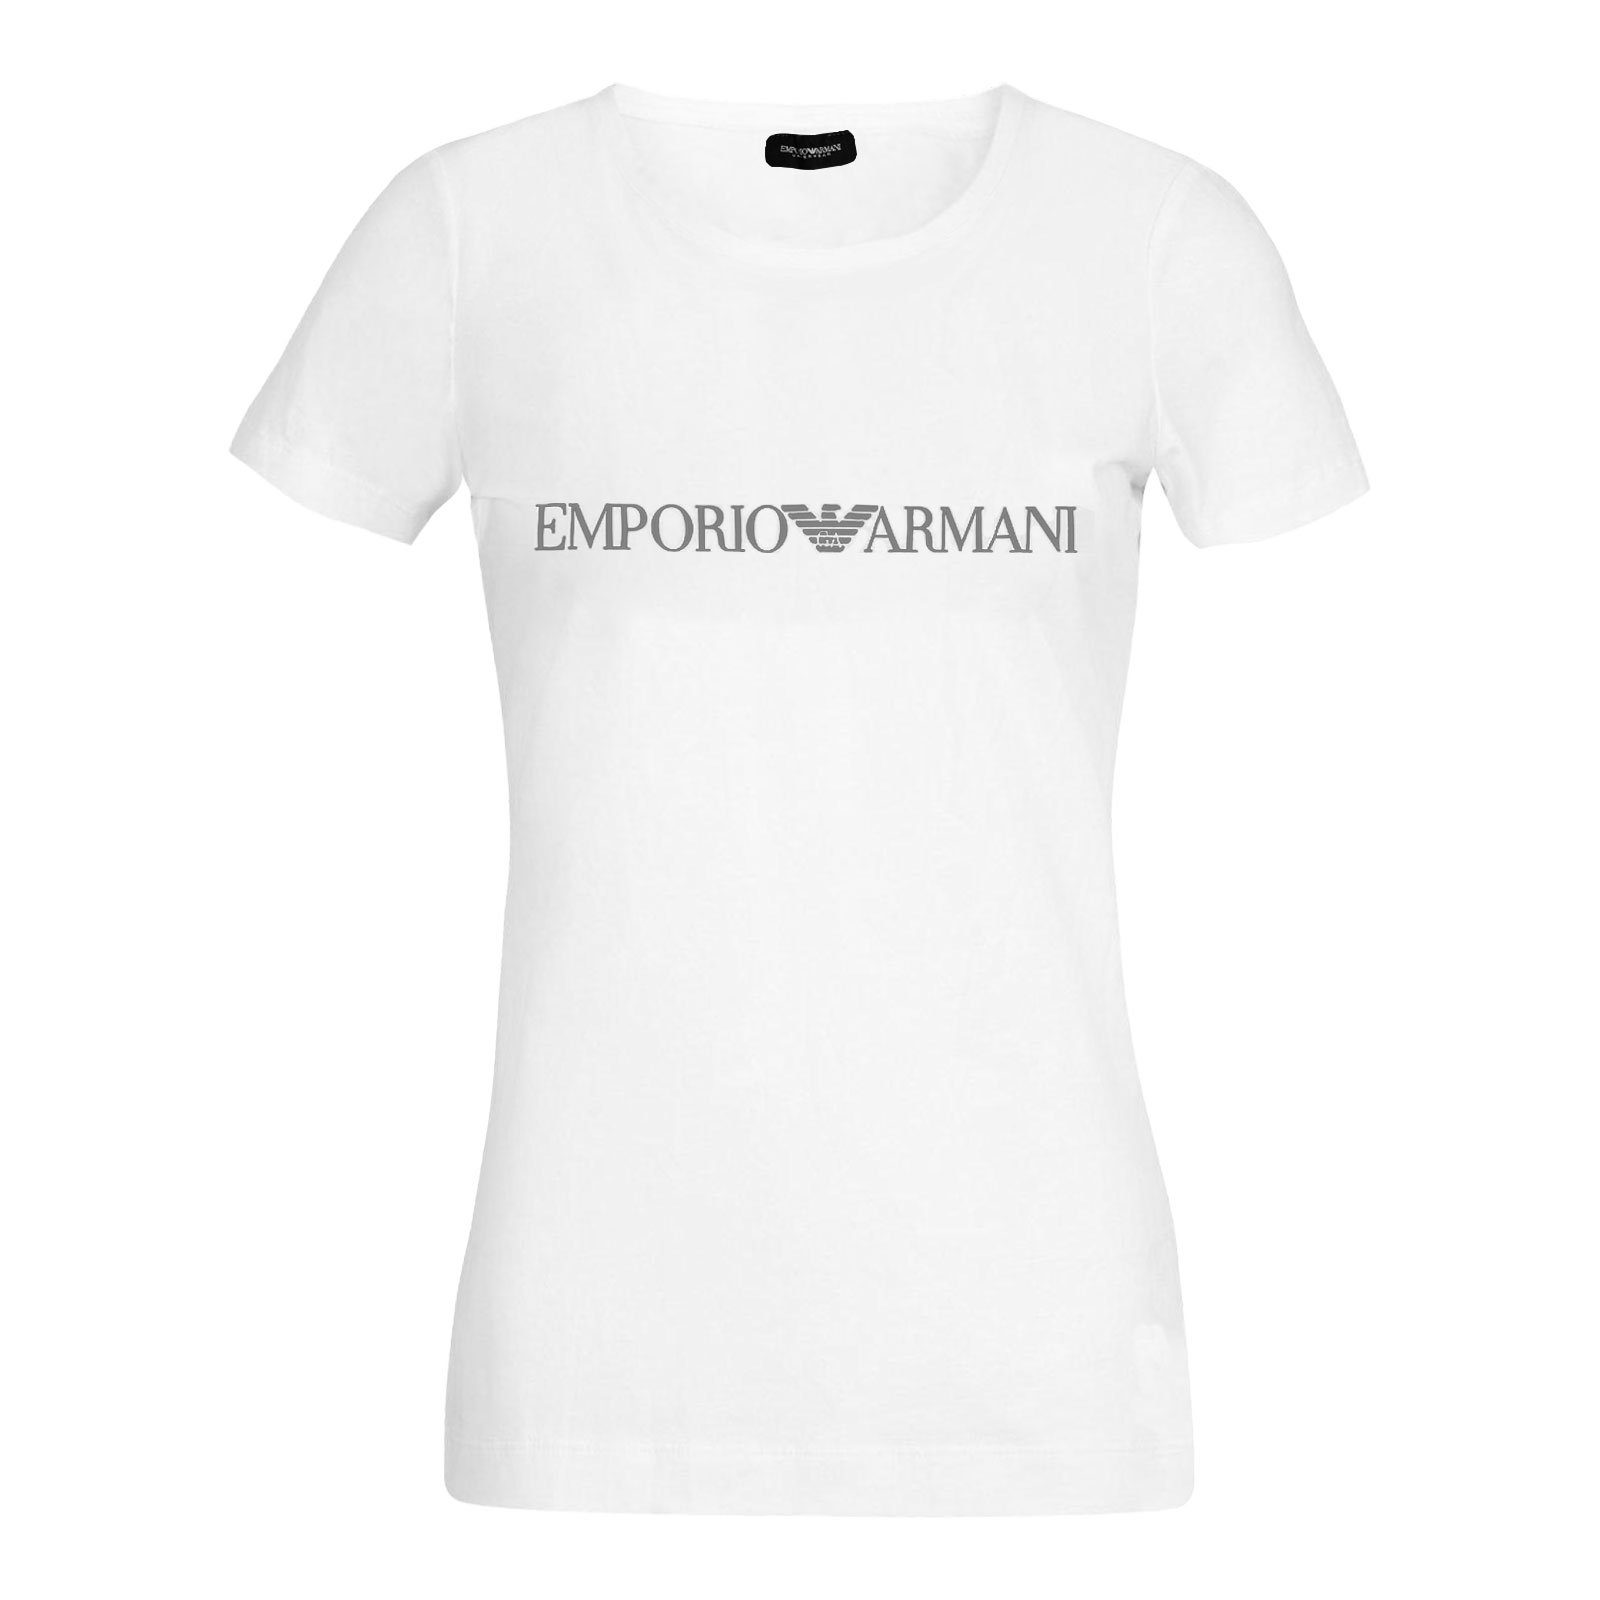 Neck der white auf mit Markenschriftzug T-Shirt Round Loungewear-Shirt 00010 Armani Brust Emporio